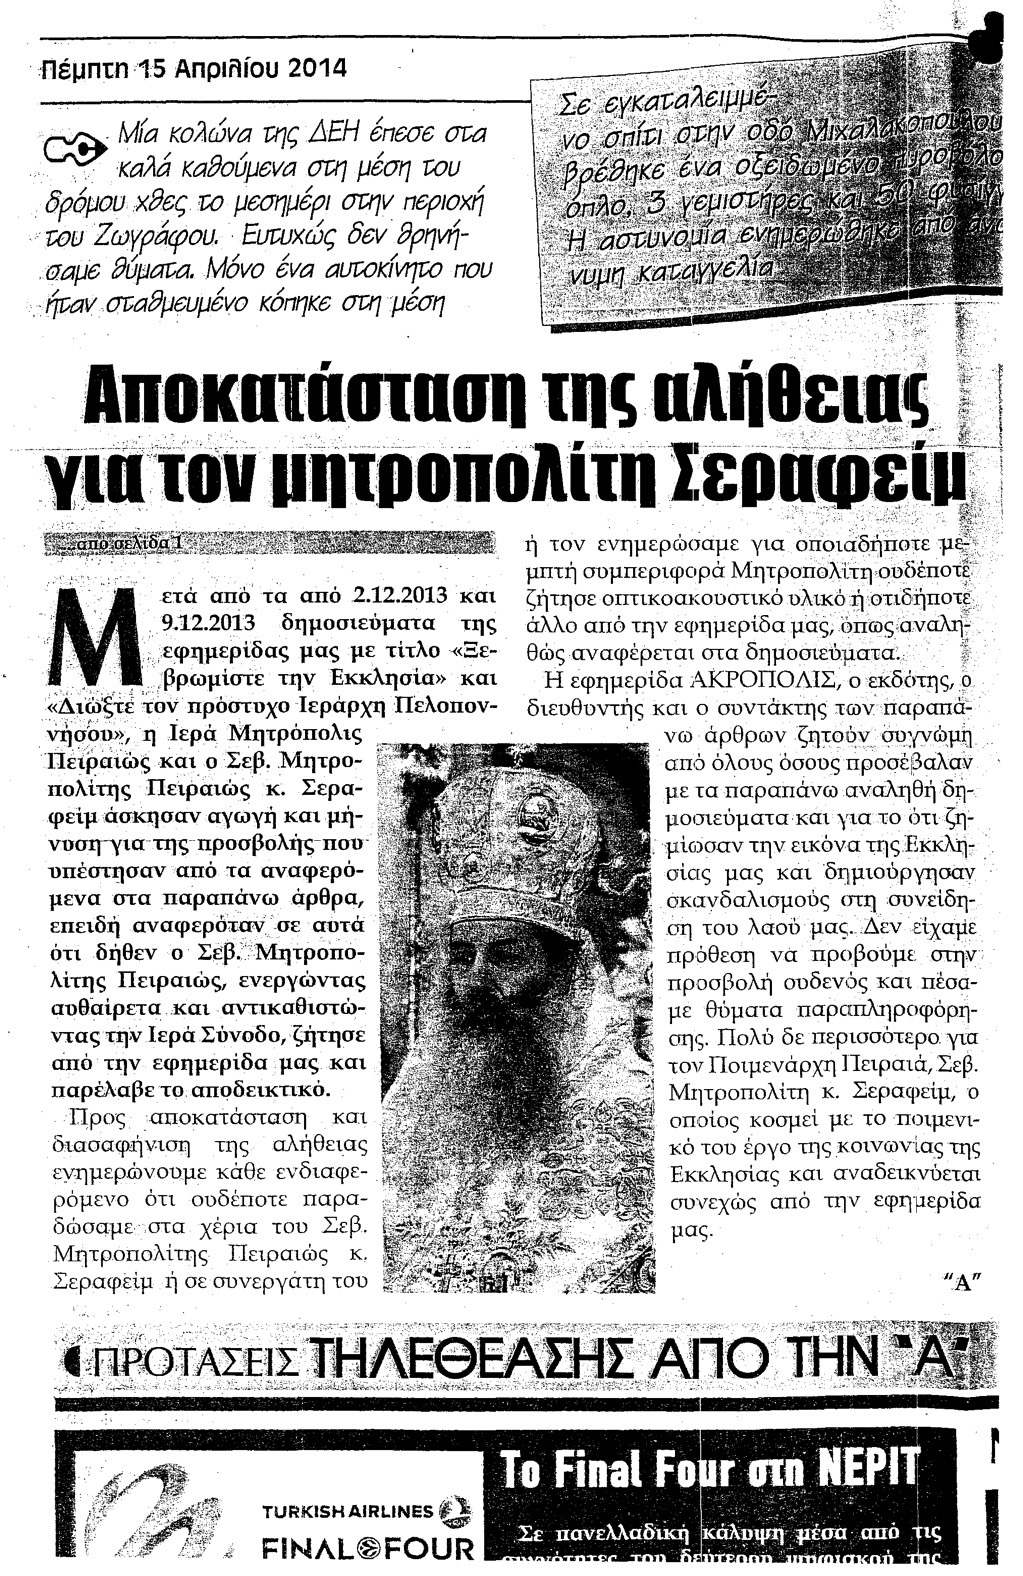 Μήνυση του Μητροπολίτη Πειραιώς Σεραφείμ κατά του εκδότη της Εφημερίδας “Ακρόπολη”